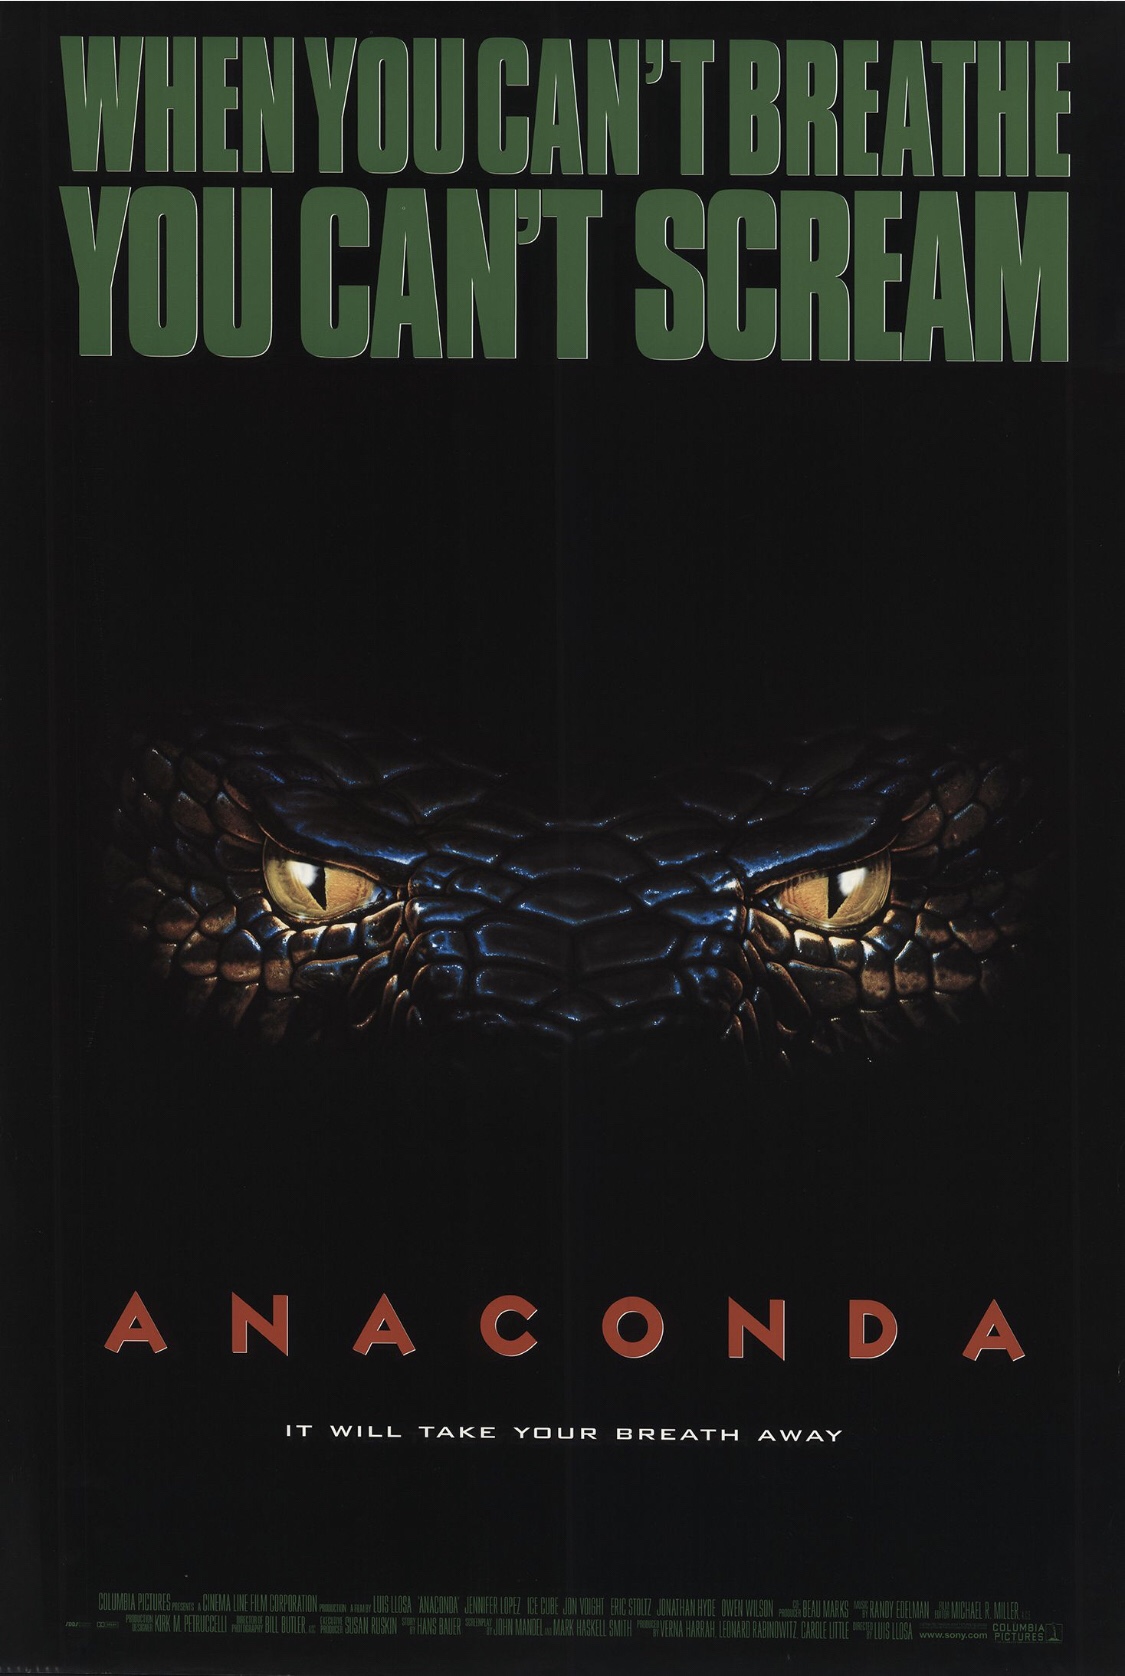 31 Days to Scare ~ Anaconda